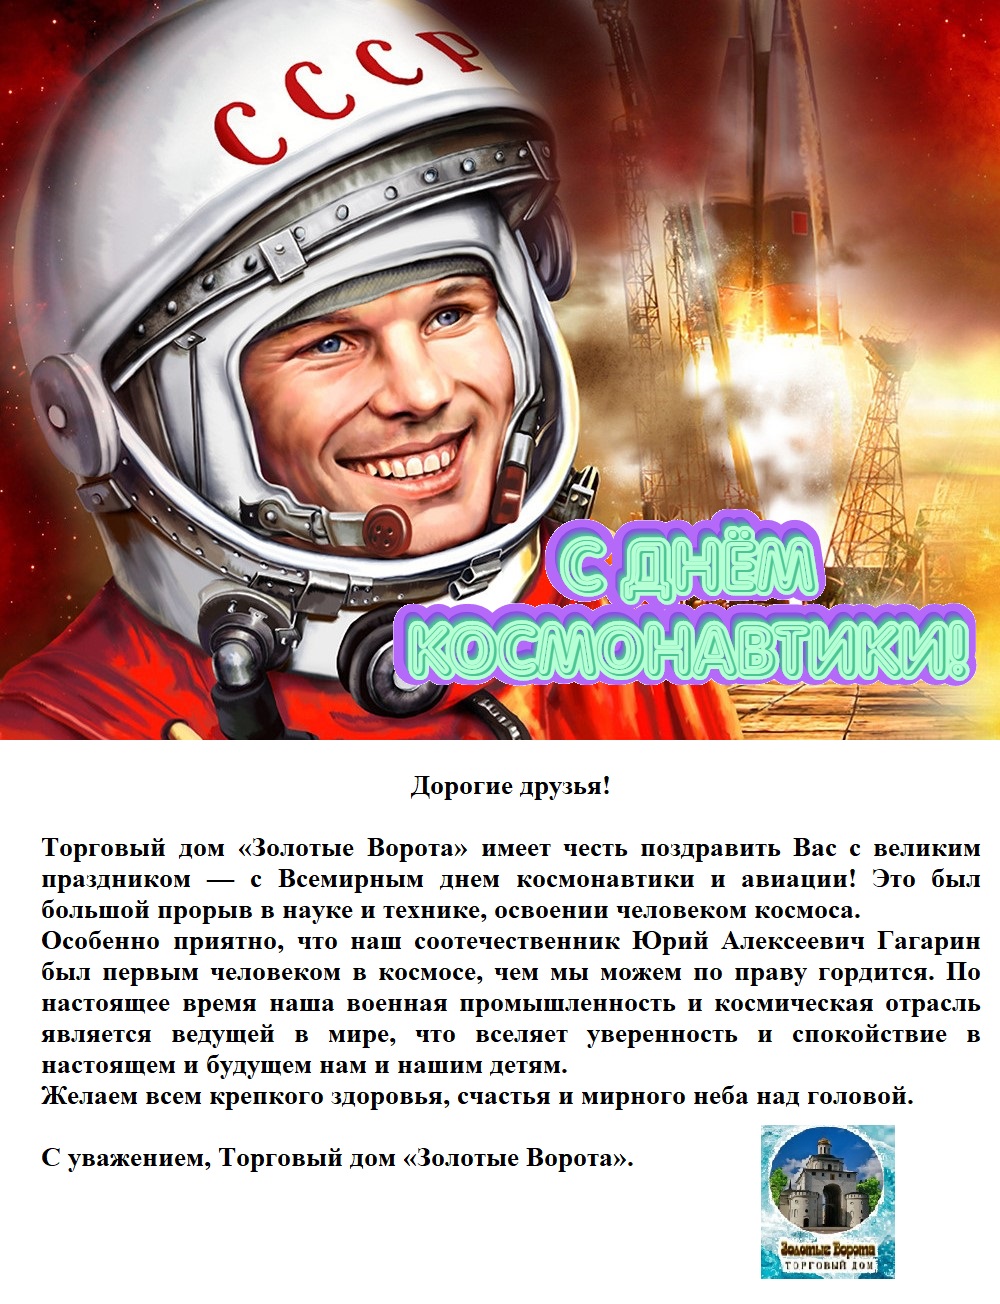 УК ТД "Эвита" - ТД "Золотые Ворота": С Днём космонавтики!